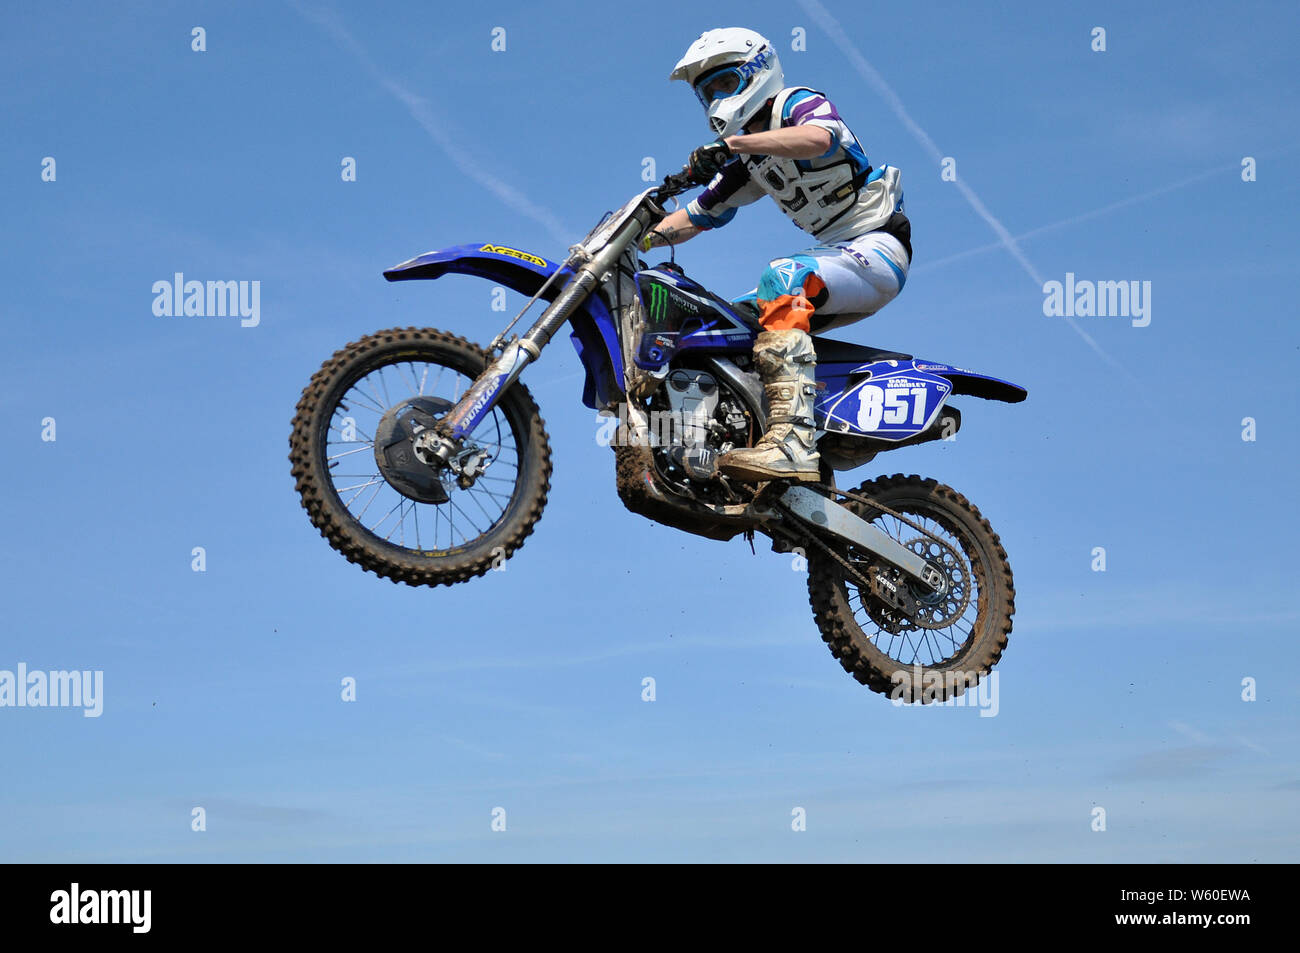 Un motard sur moto scramble, sauter haut dans le ciel bleu. Le motocross est une forme de course de moto qui a eu lieu sur des circuits hors-route. Dirt bike mx Banque D'Images